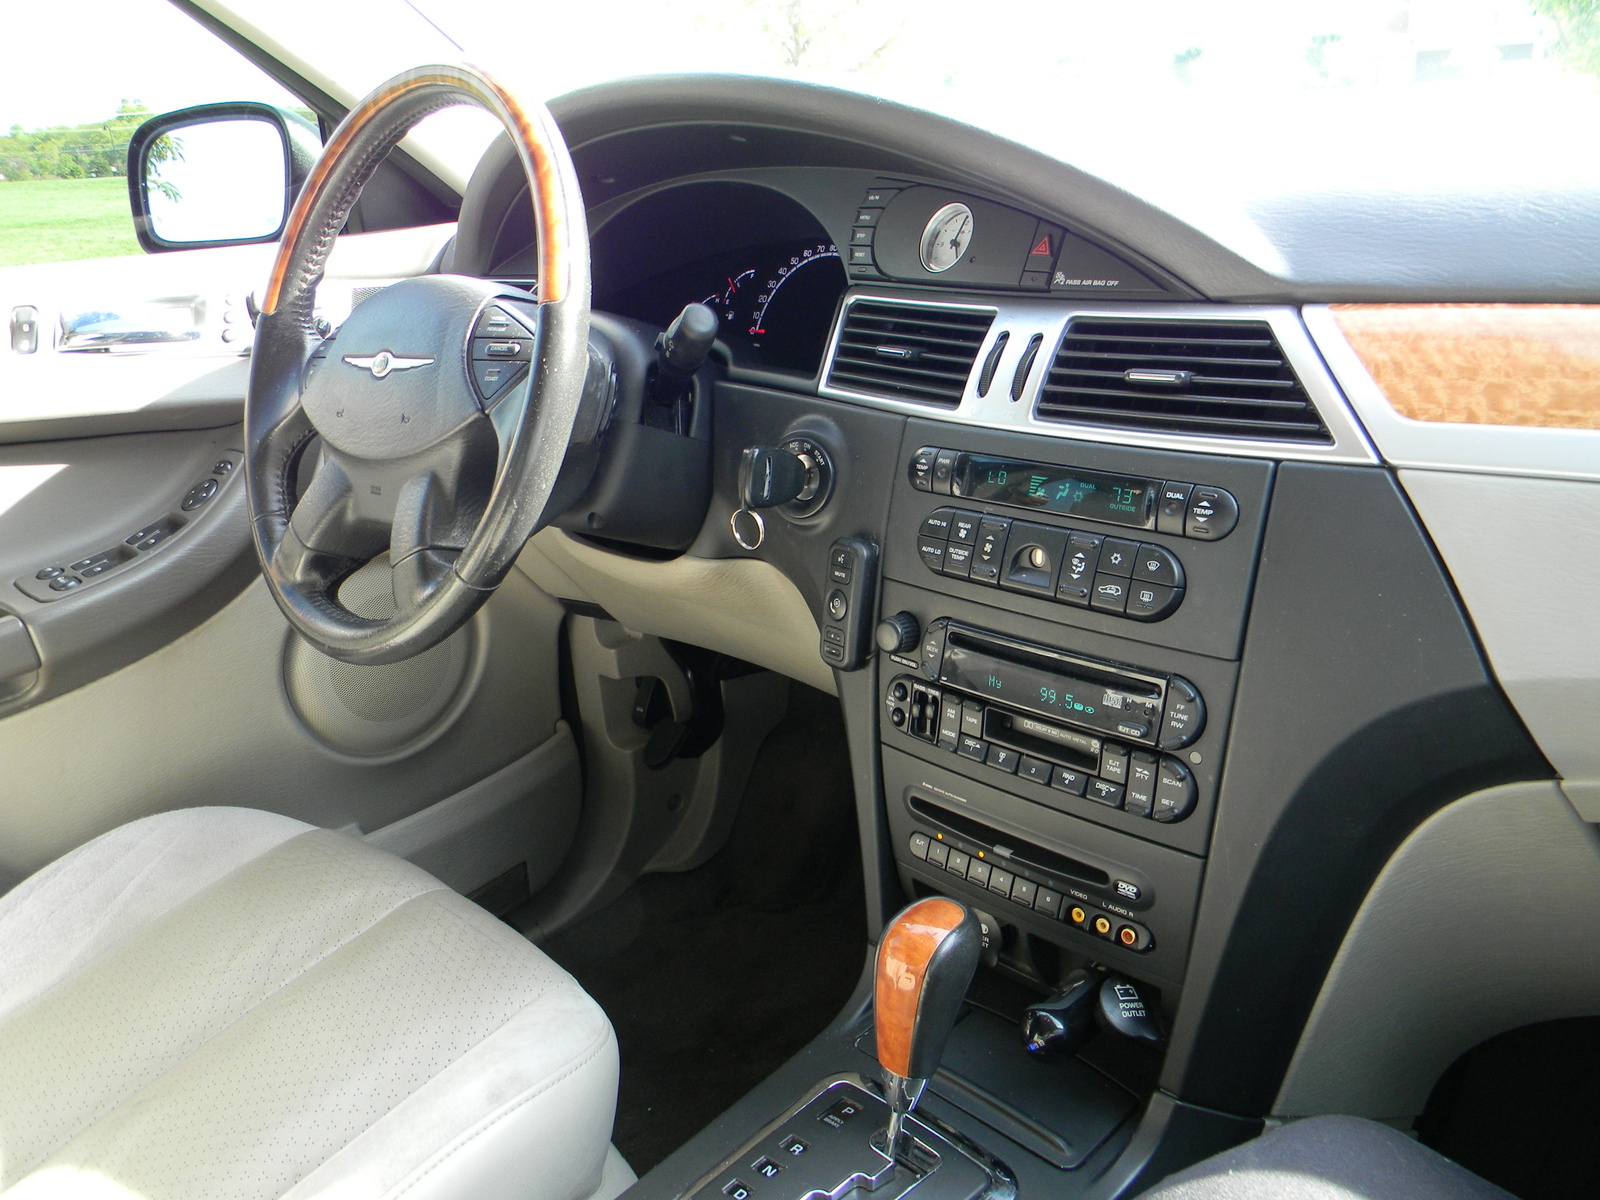 2006 Chrysler pacifica interior photos #1